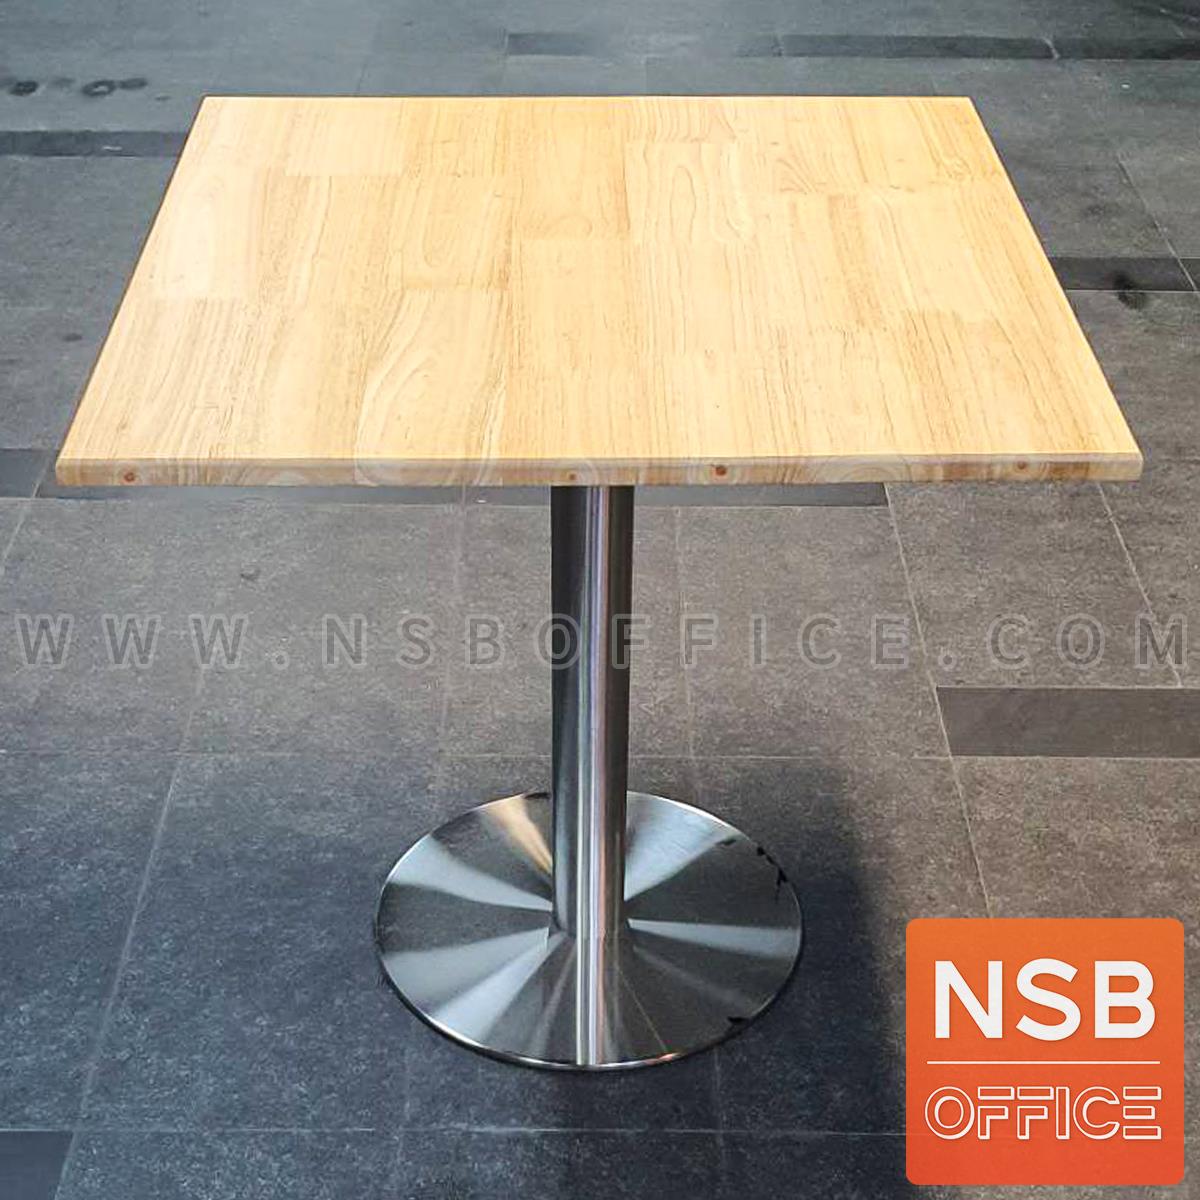 โต๊ะบาร์ ขาจานกลม หน้าสี่เหลี่ยม รุ่น Tesfaye (เทสเฟย์)  ขาสีสเตนเลส